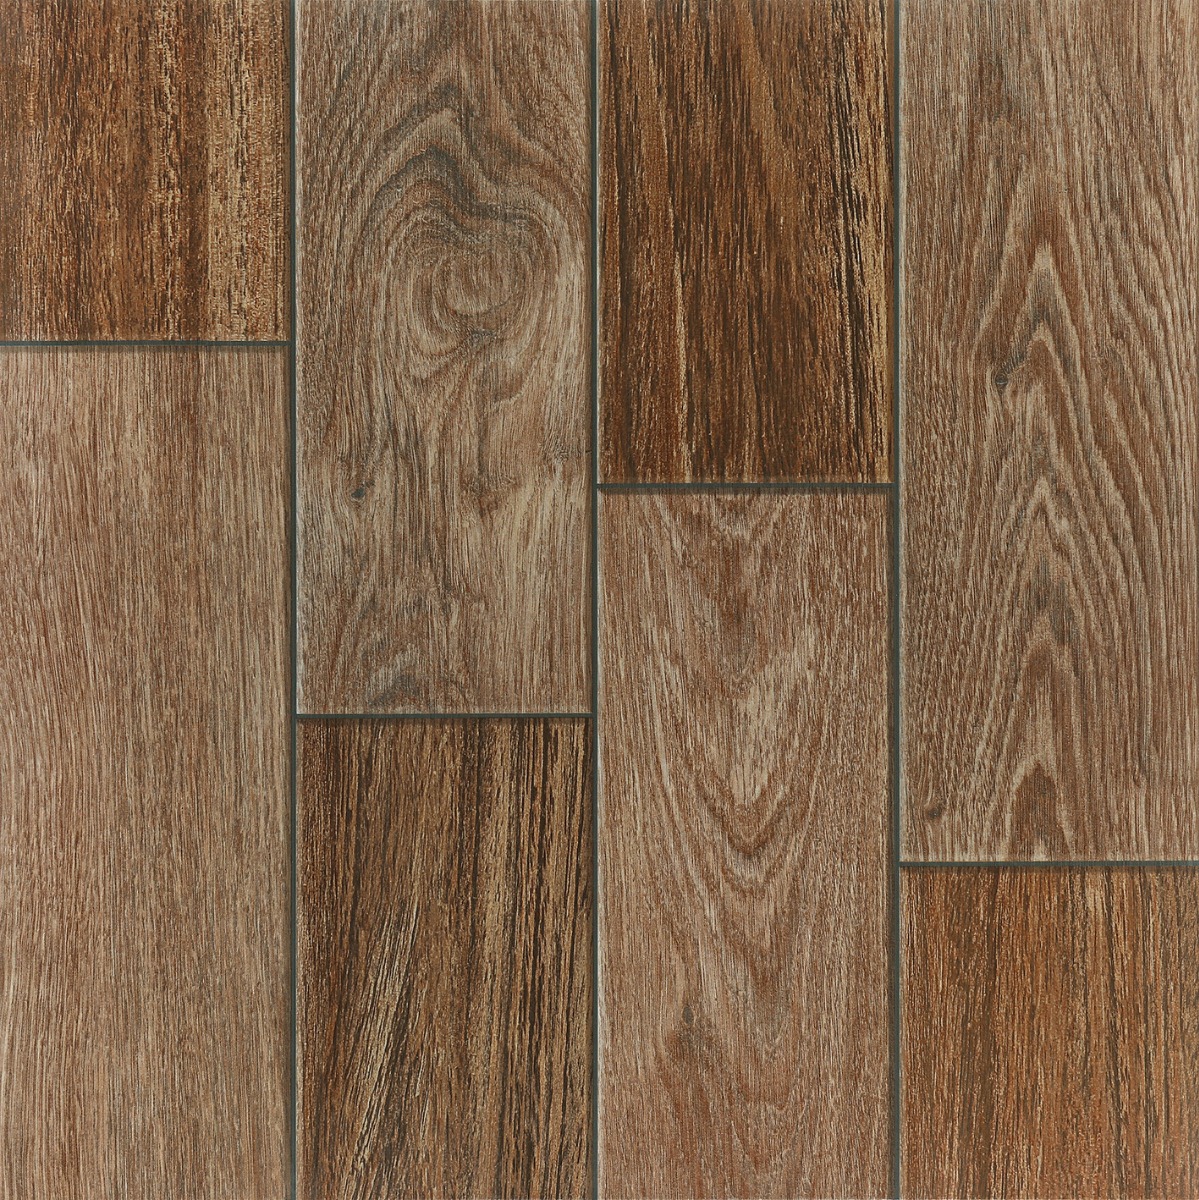 modern wooden floor tiles texture